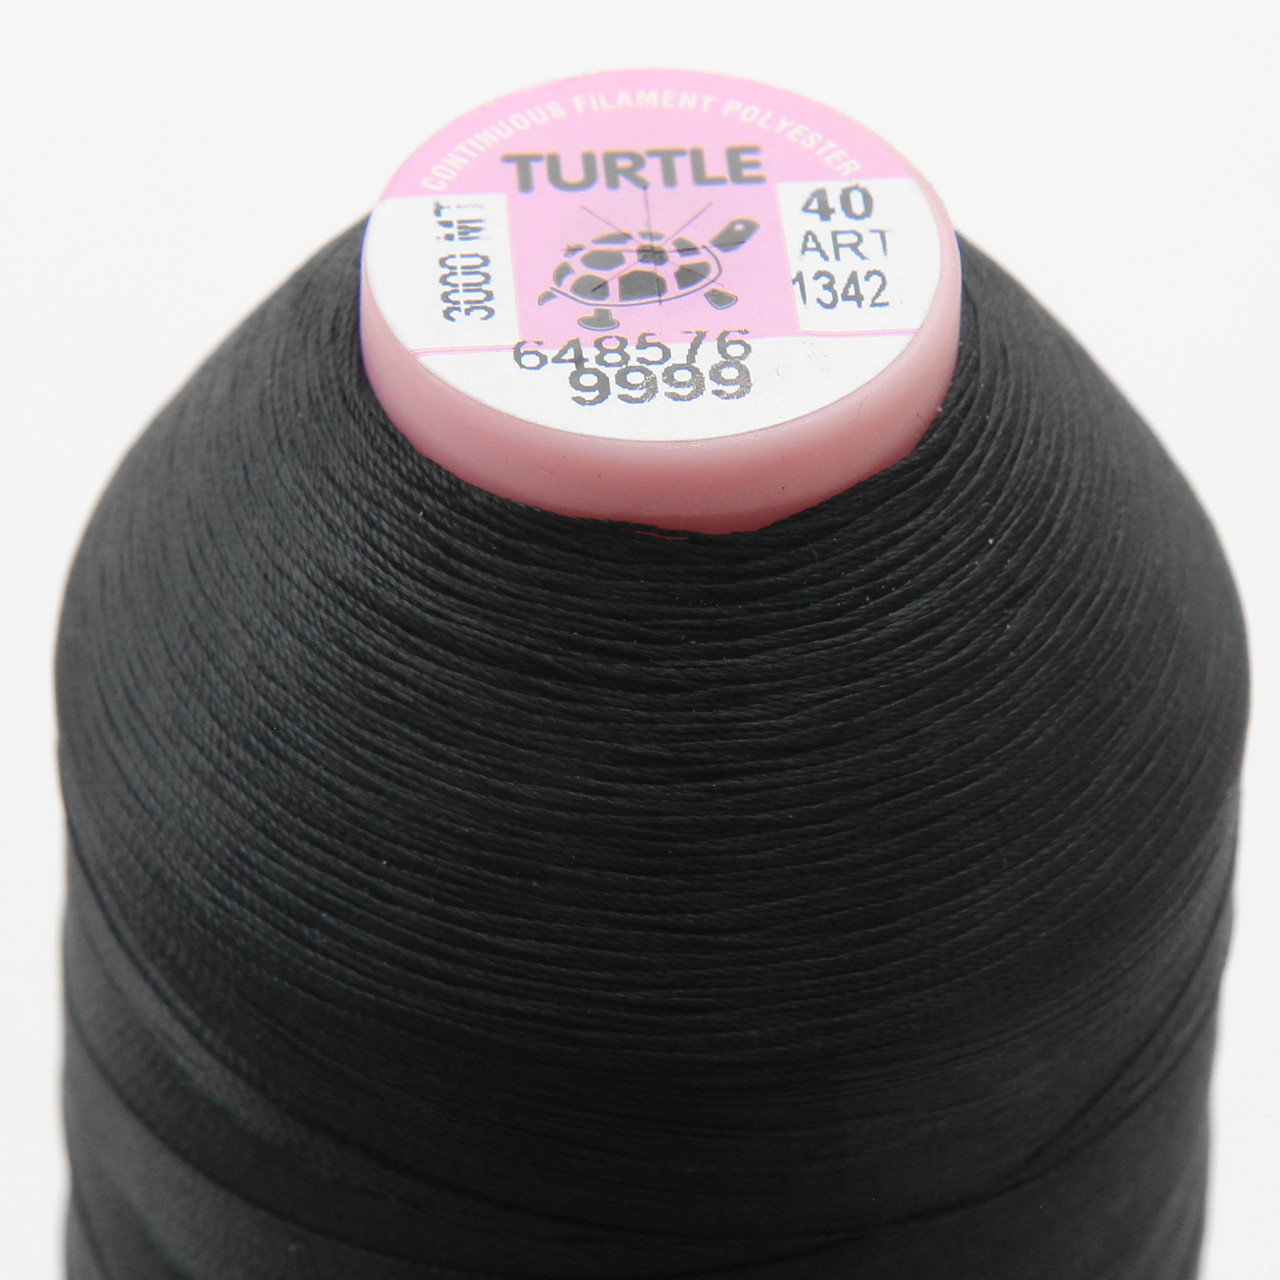 Нитка TURTLE (Туреччина) №30 колір 9999 для оверлоку, чорний, довжина 2500м. детальна фотка